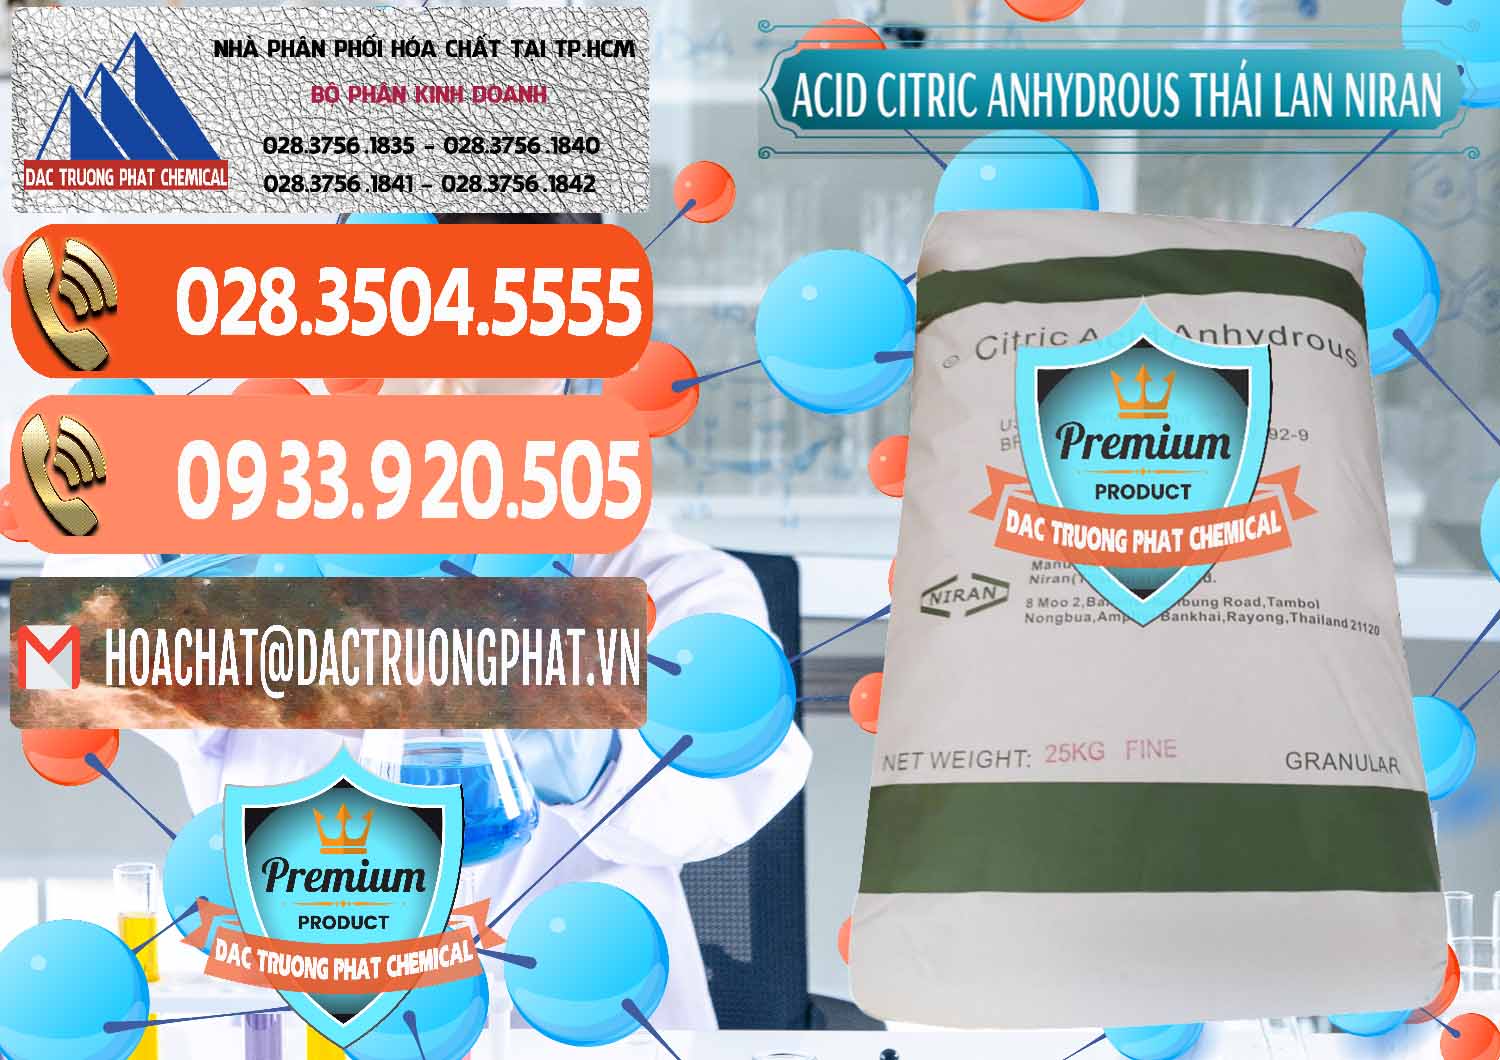 Nơi cung cấp & bán Acid Citric - Axit Citric Anhydrous - Thái Lan Niran - 0231 - Công ty kinh doanh & cung cấp hóa chất tại TP.HCM - hoachatmientay.com